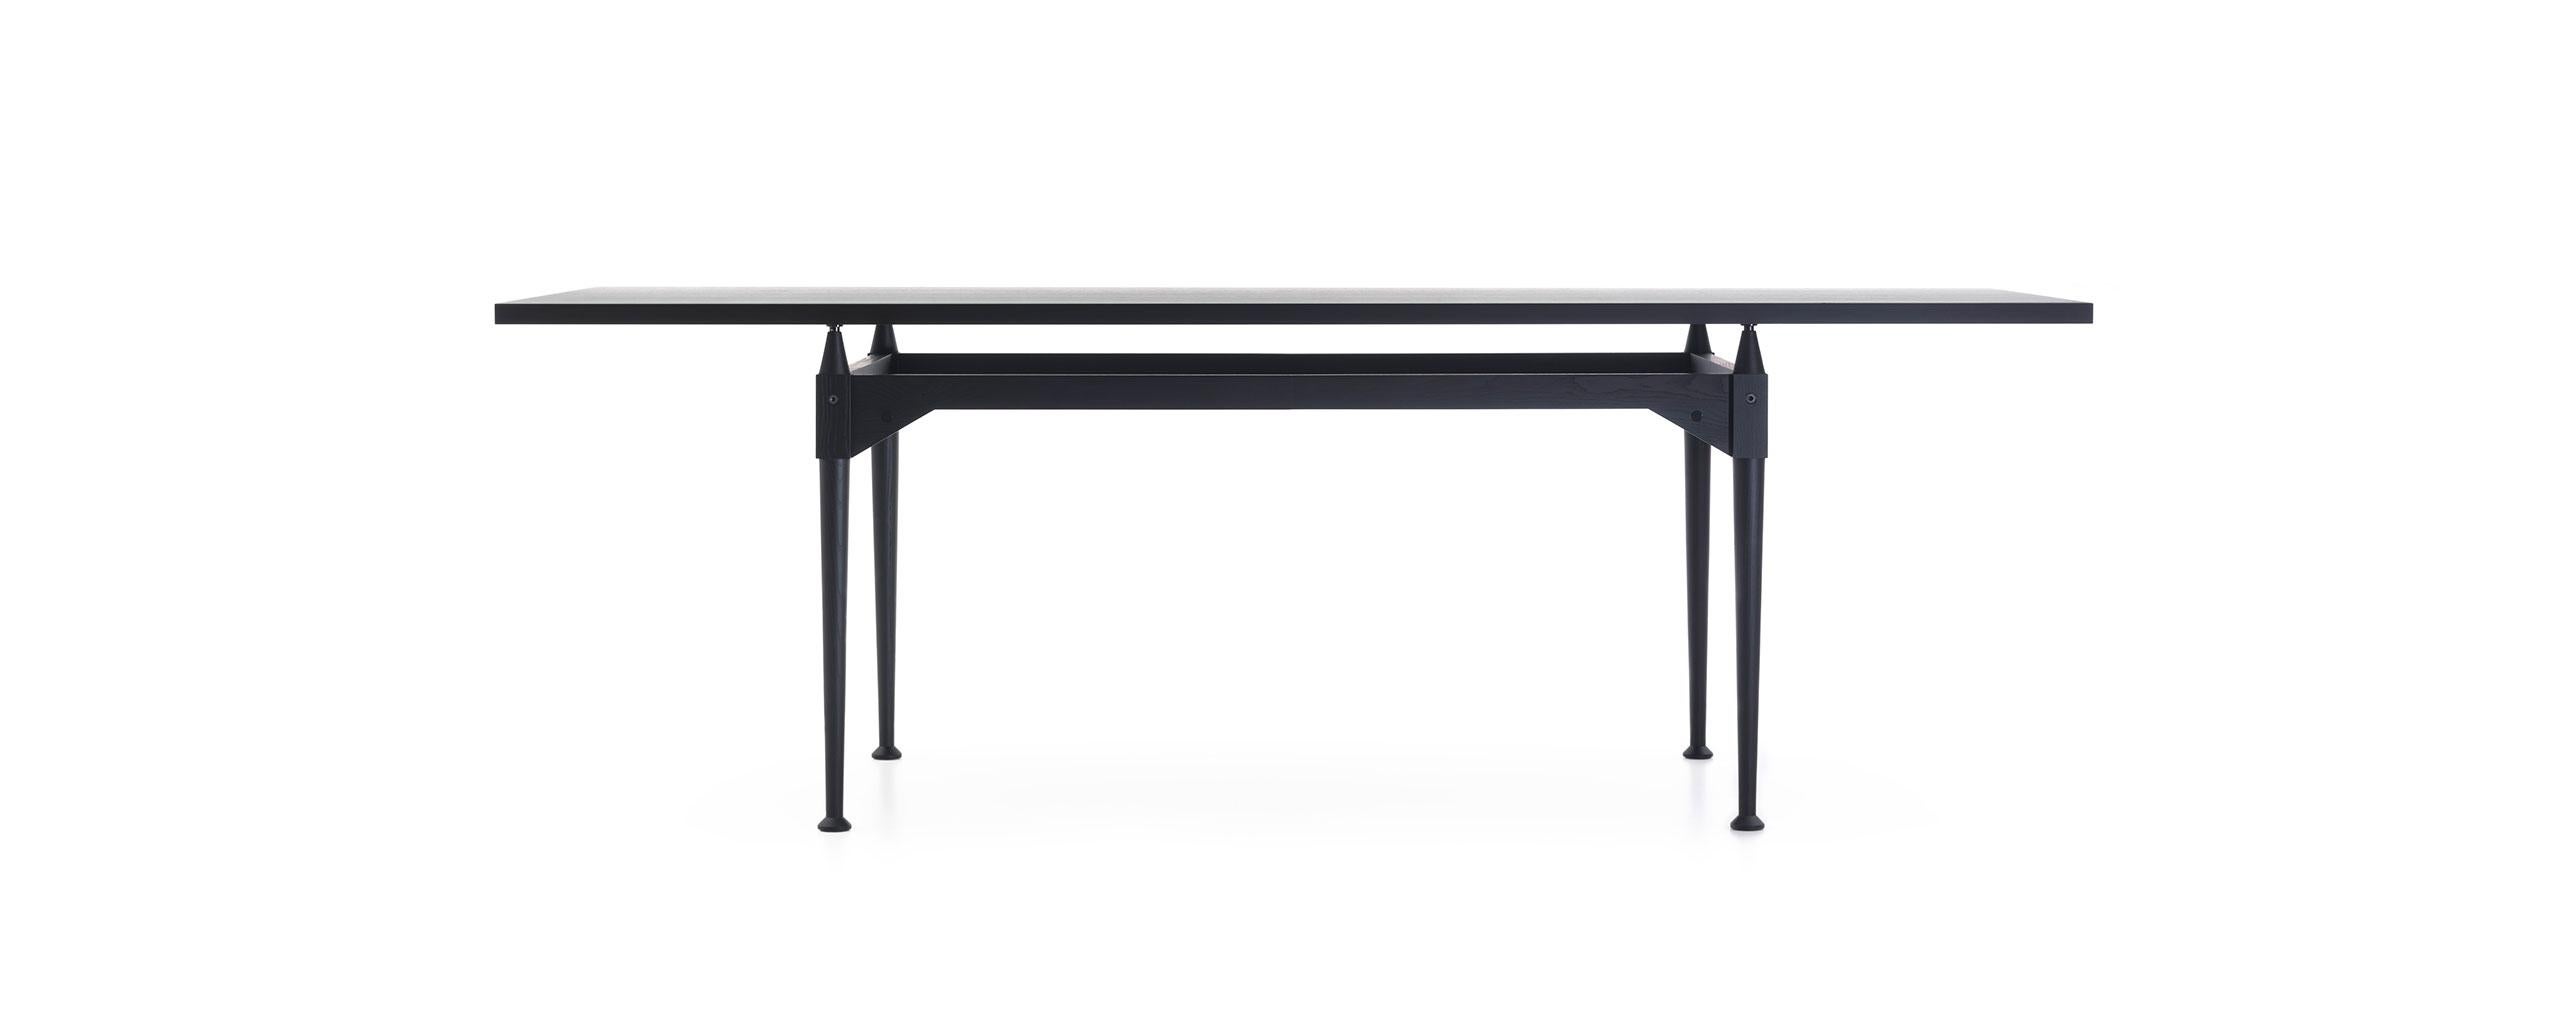 Der Tisch wurde 1953 von Franco Albini entworfen. Neu aufgelegt im Jahr 2013.
Hergestellt von Cassina in Italien.

Franco Albini entwarf diesen Tisch unter Verwendung des Strebenelements, das er bereits bei der Gestaltung der Bücherregale Veliero